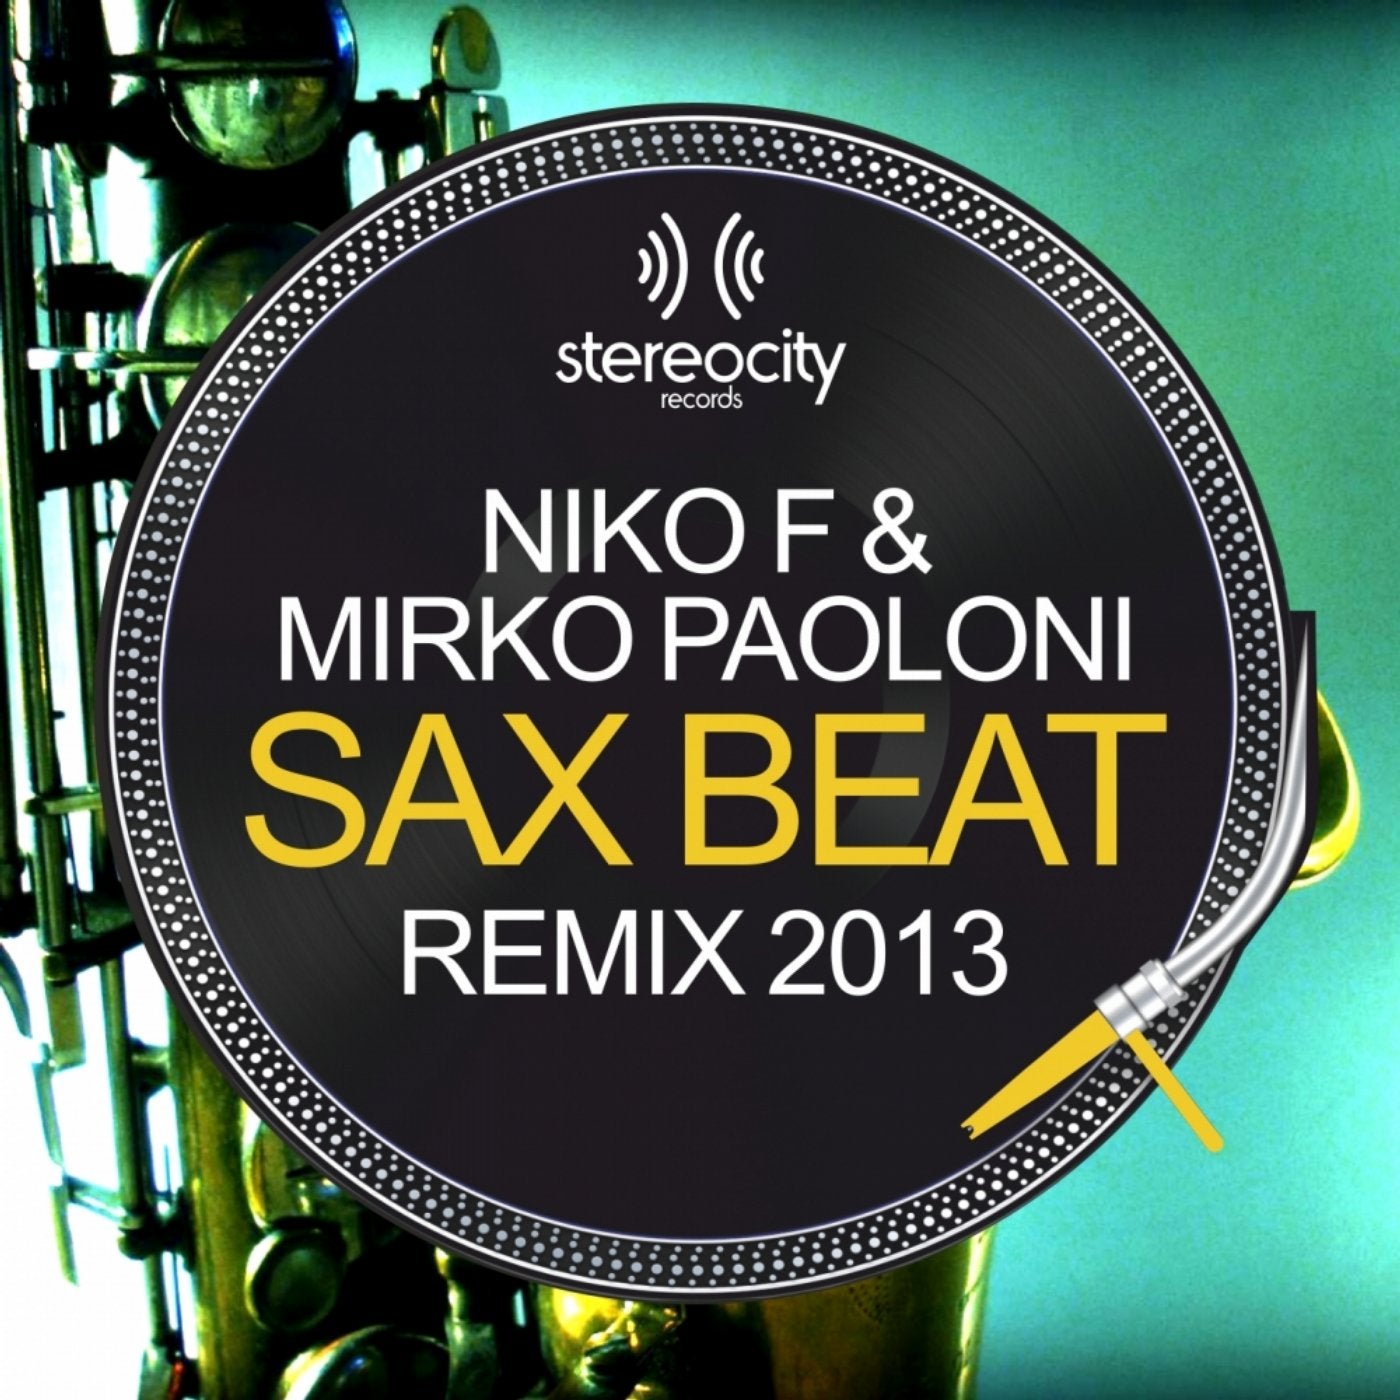 Sax Beat (Niko F & Mirko Paoloni 2013 Remix)